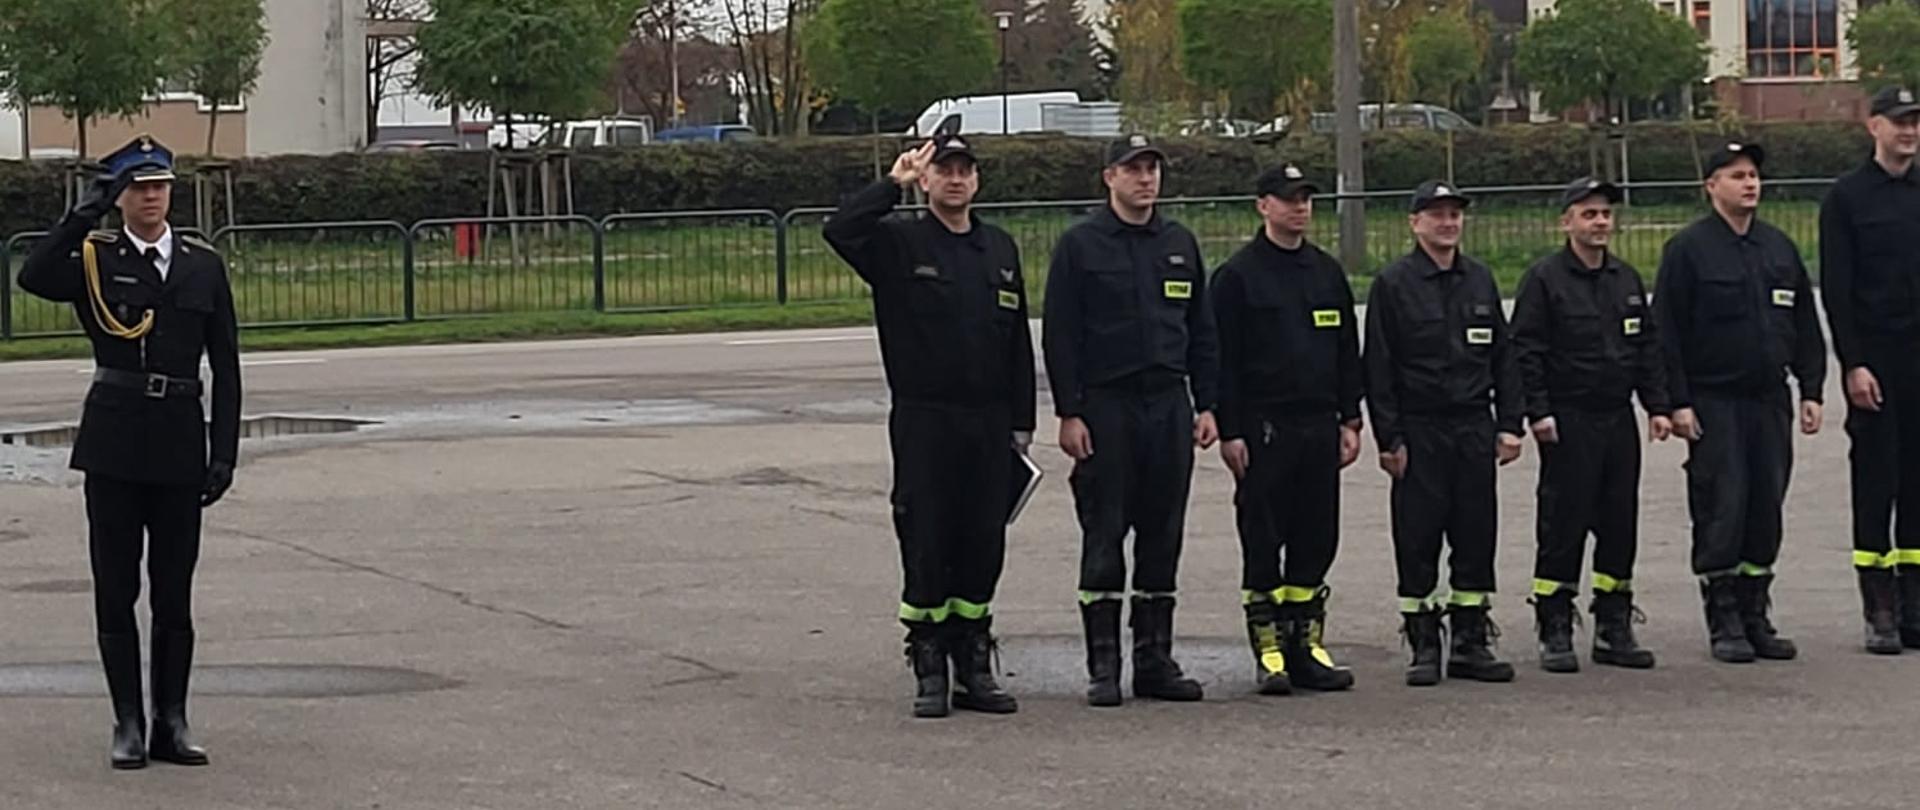 Strażacy stoją na baczność na uroczystej zbiórce